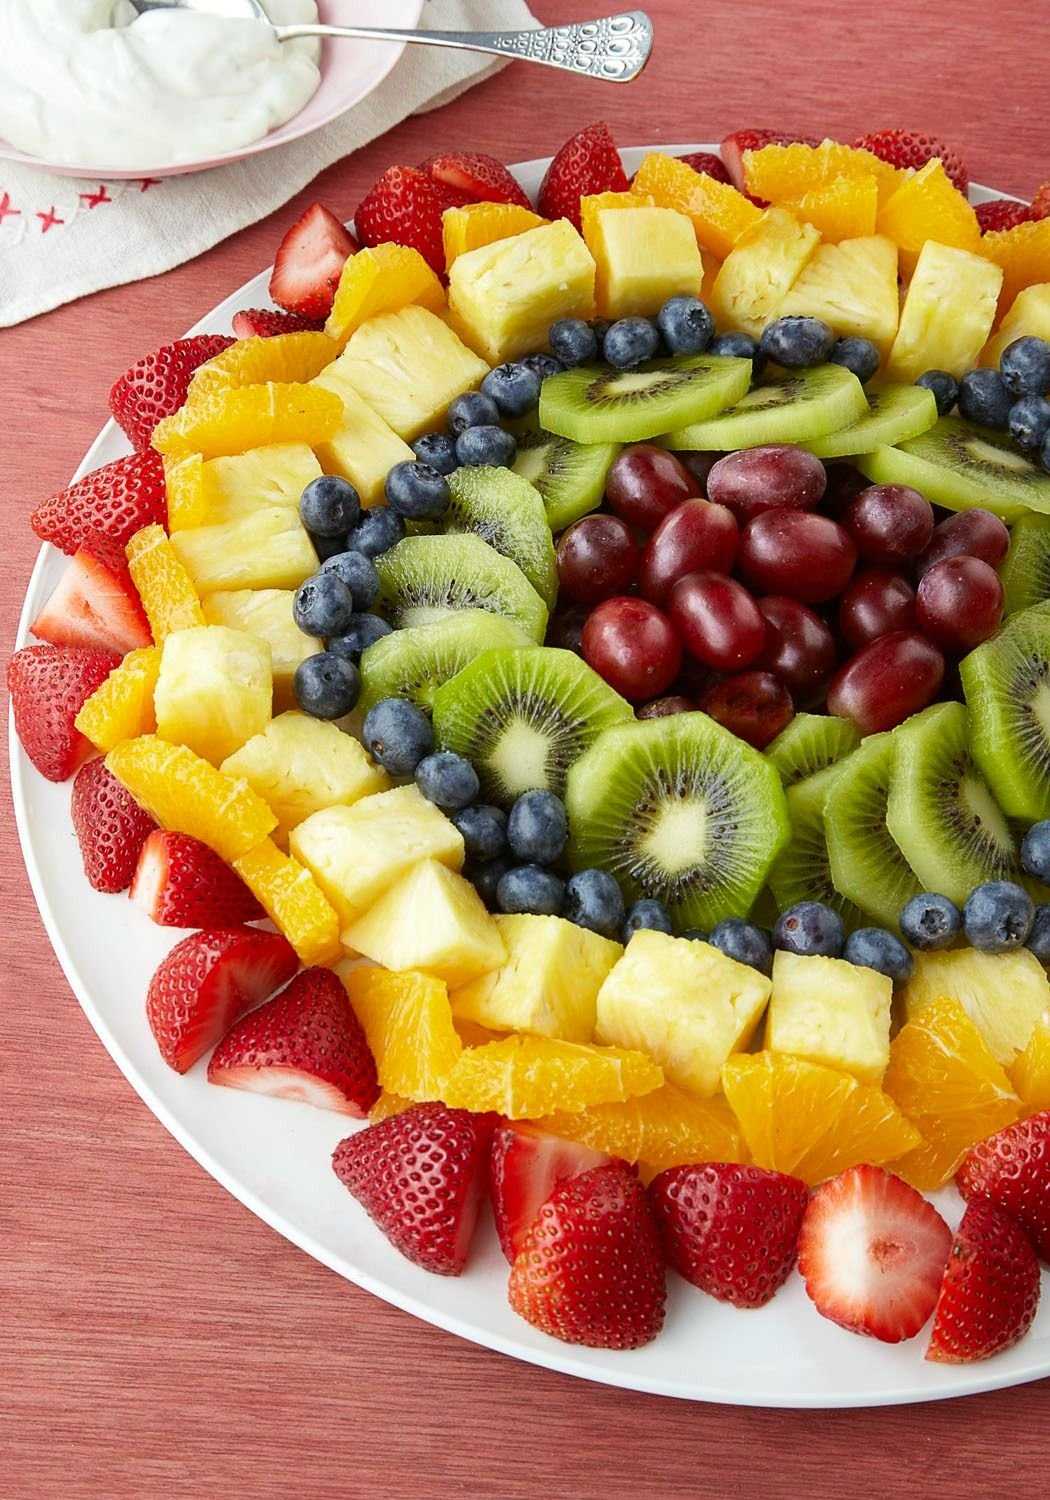 Как правильно подавать на стол фрукты? c чего начинается карвинг?